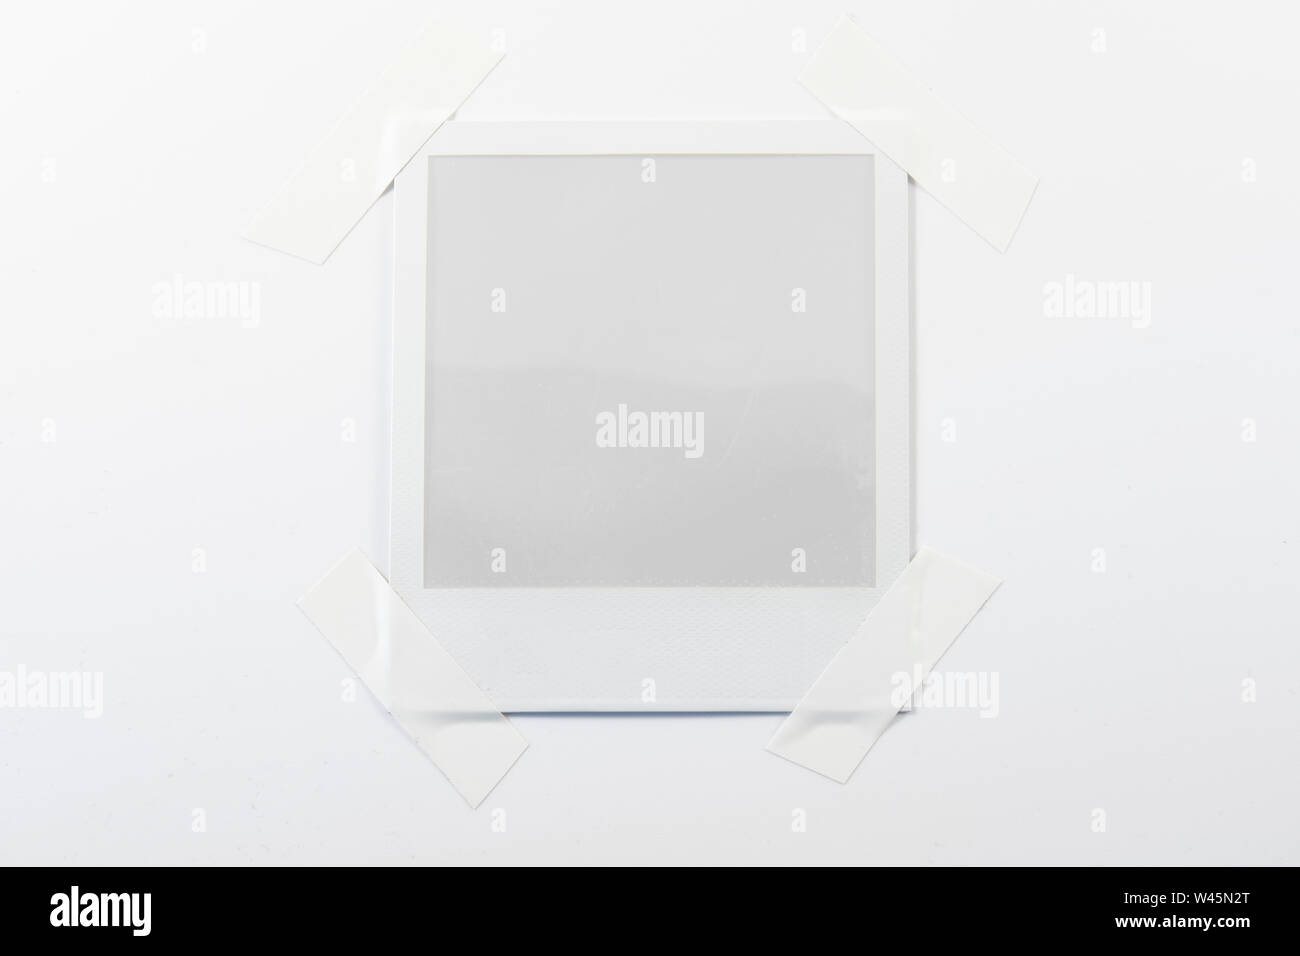 Una imagen polaroid vacía pegado en una hoja de papel Fotografía de stock -  Alamy